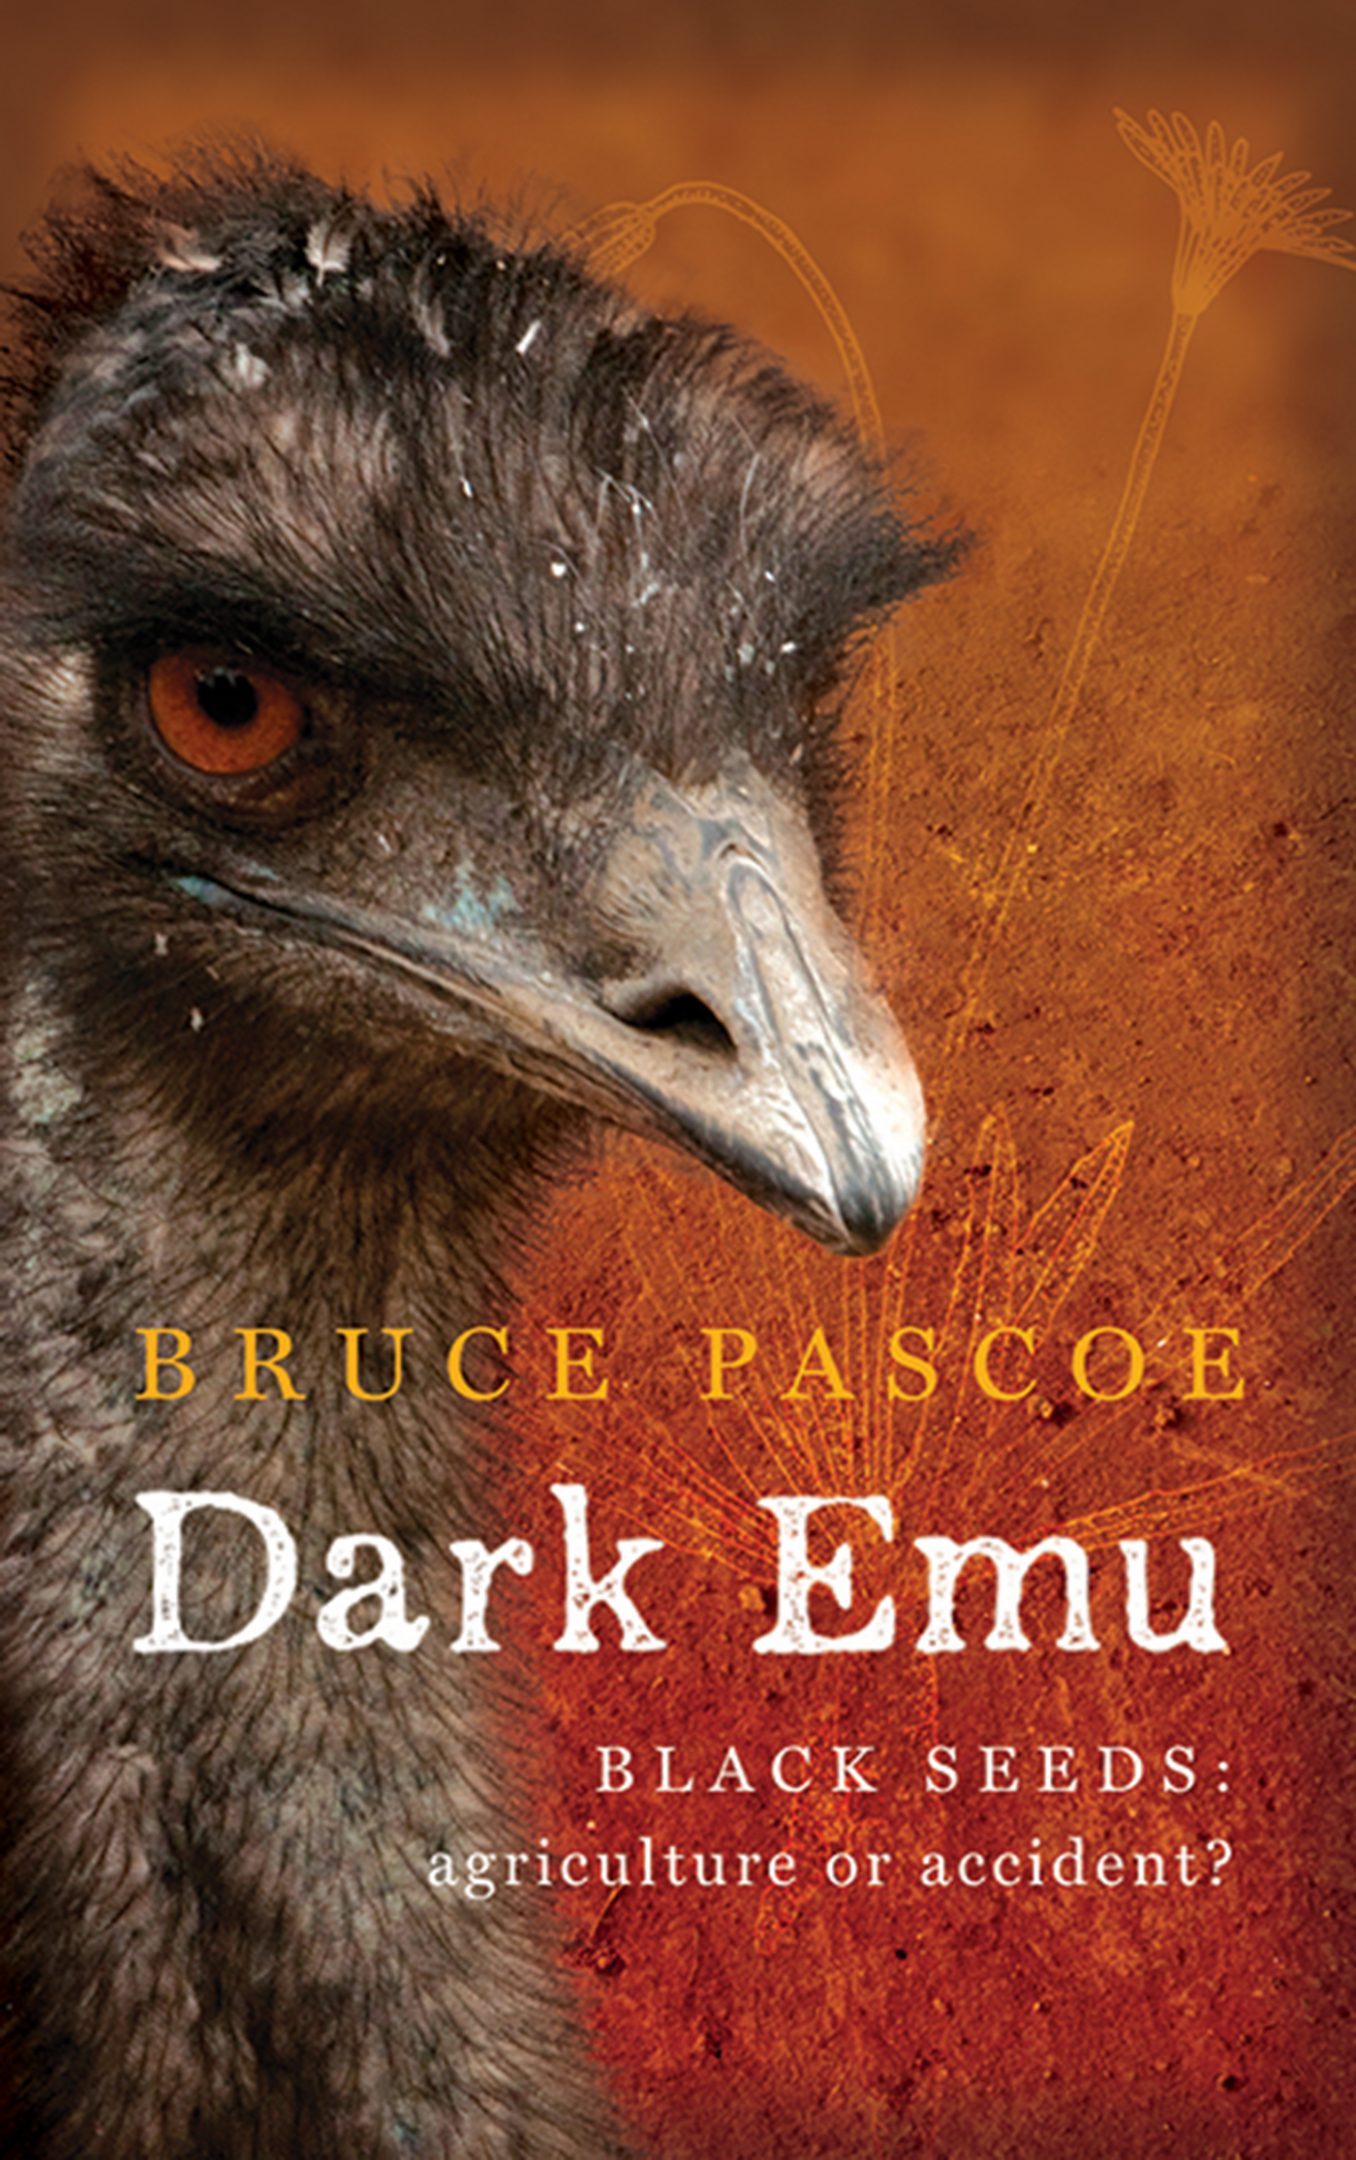 Dark emu - black seeds: agriculture or accident?